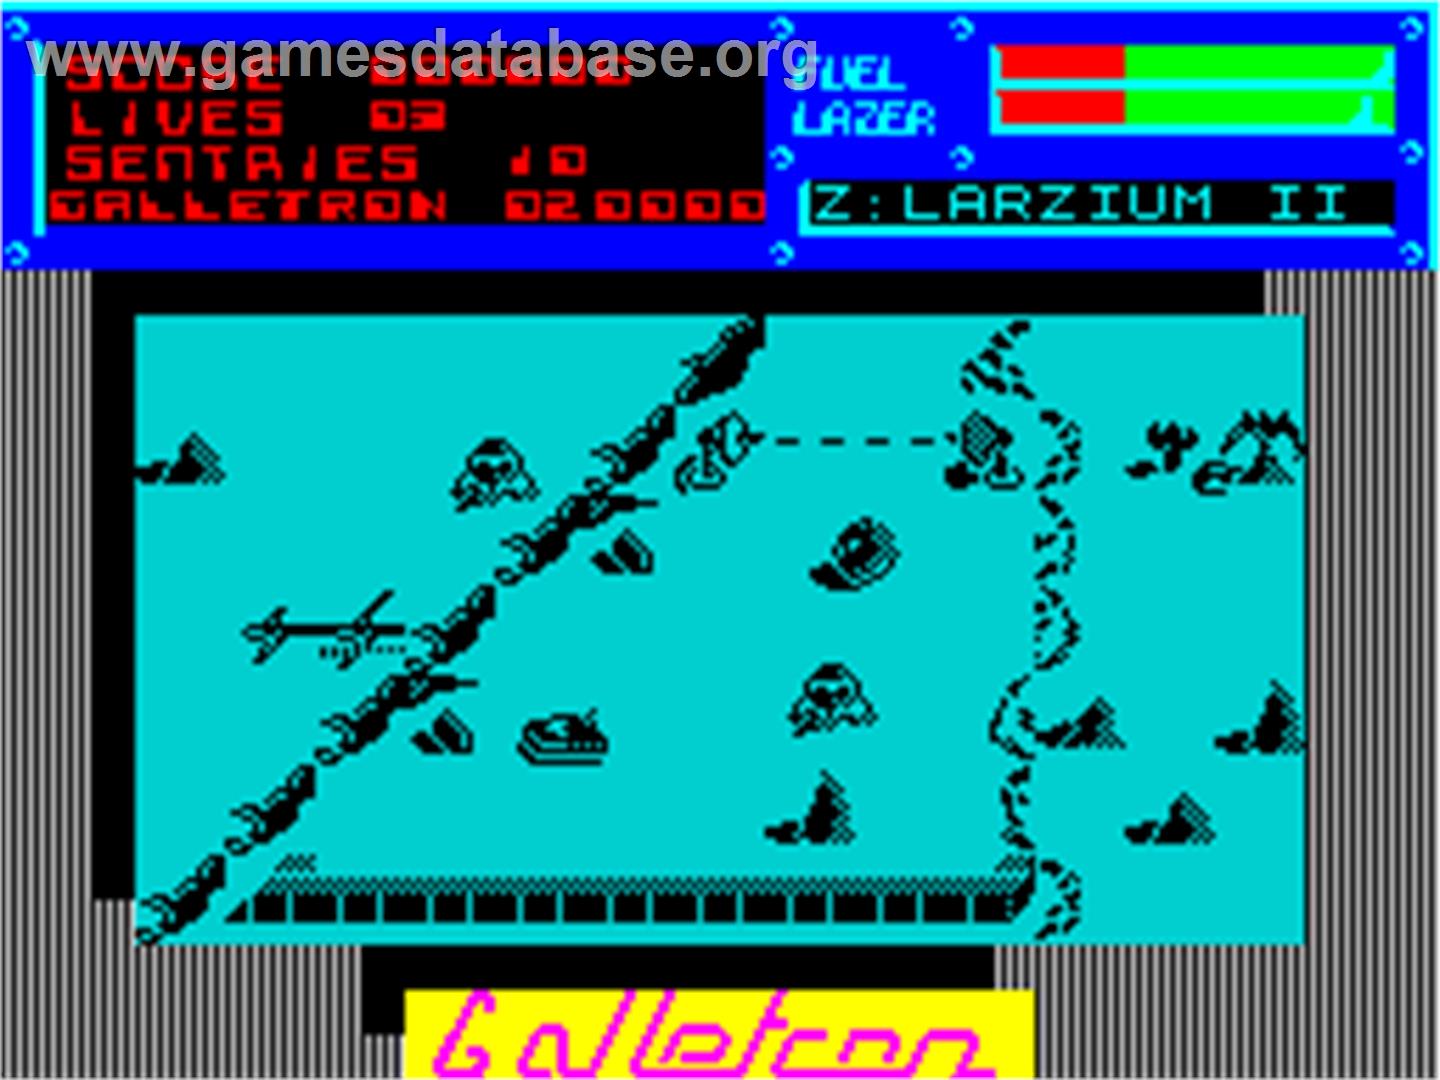 Galletron - Sinclair ZX Spectrum - Artwork - In Game